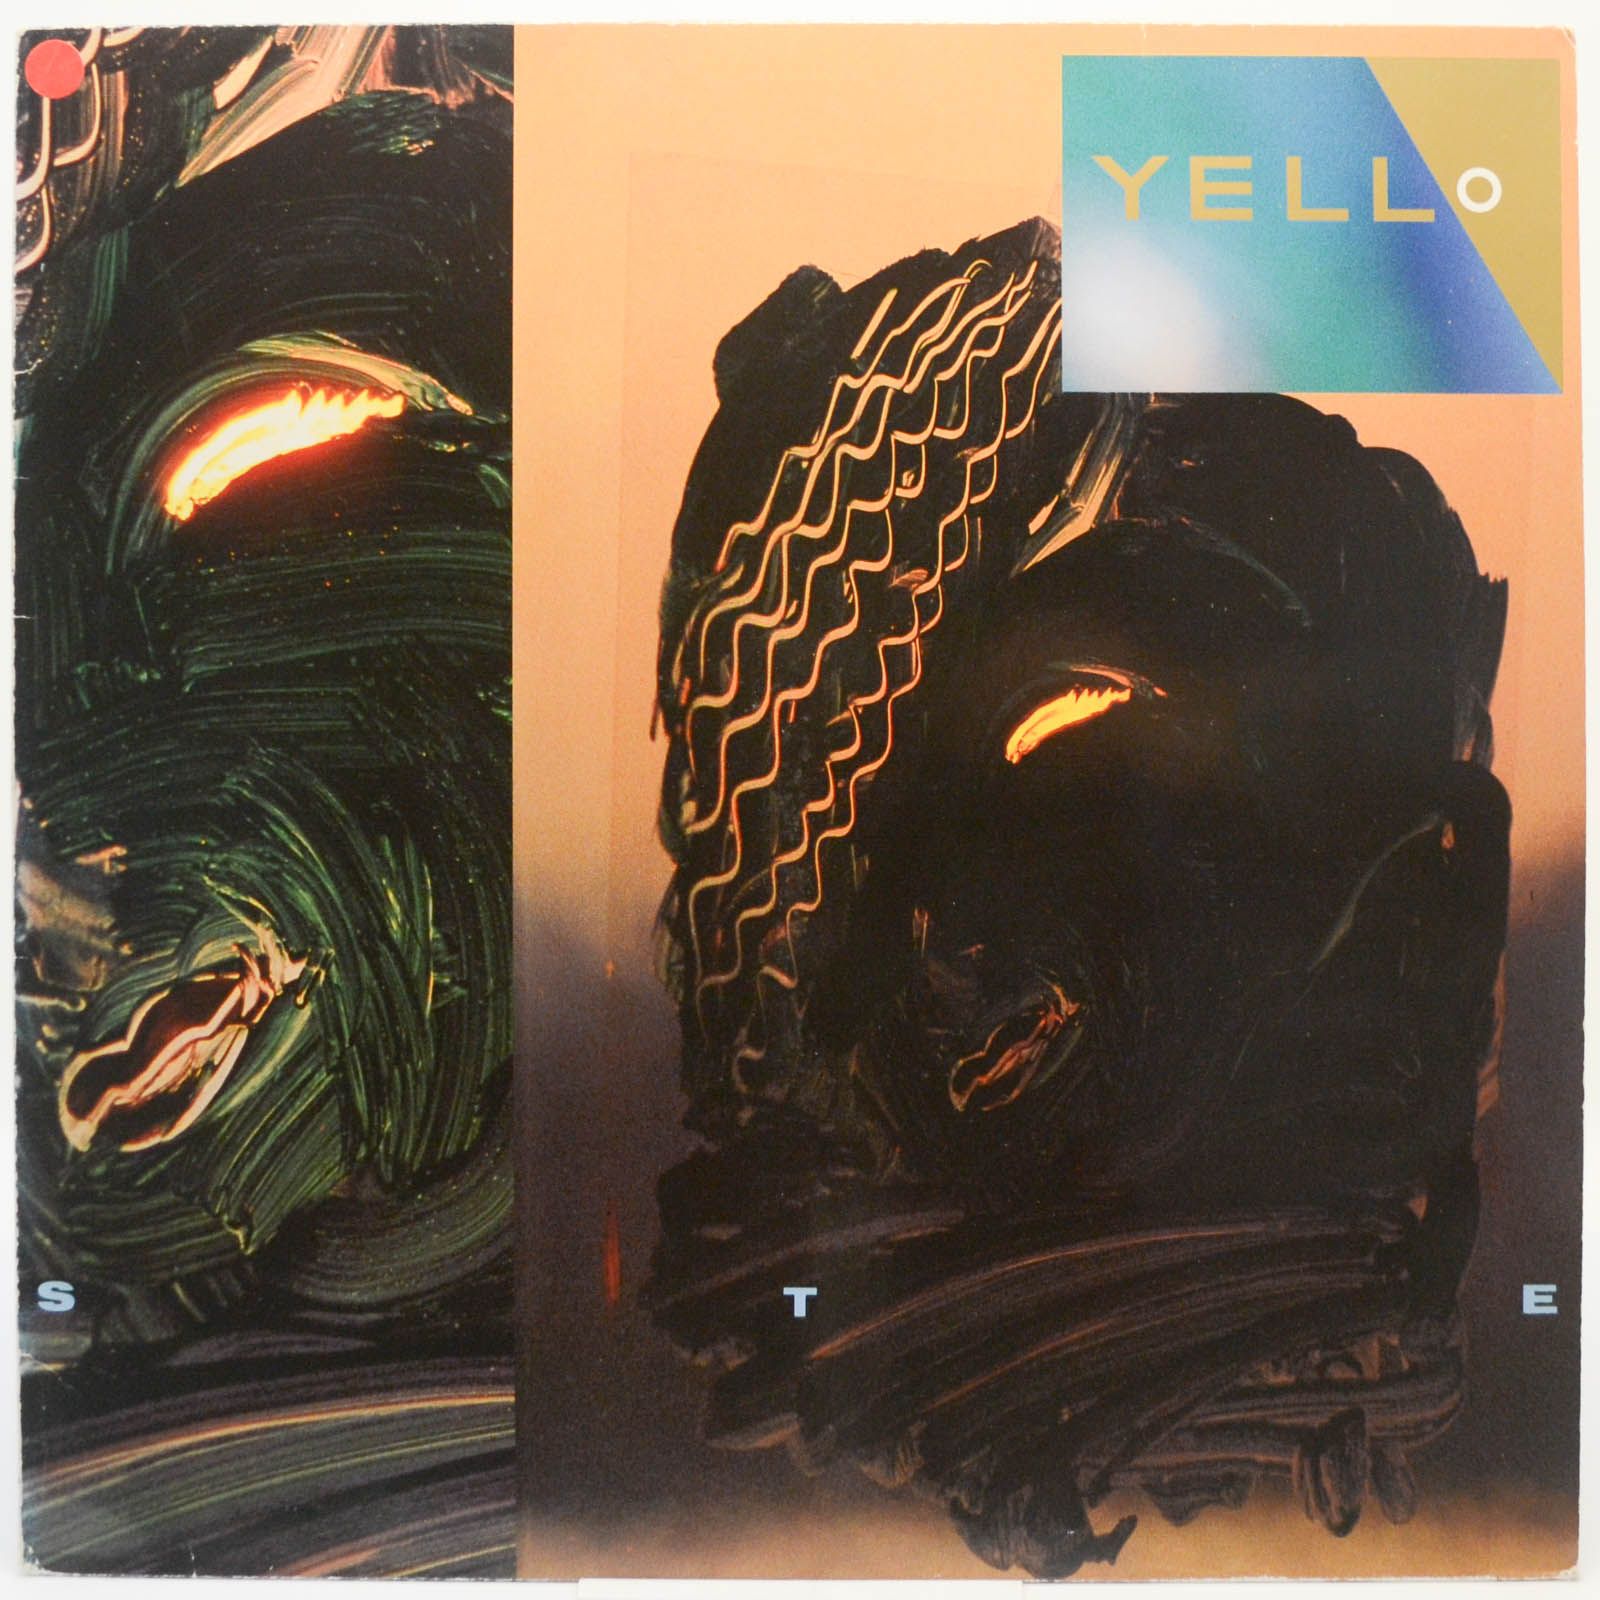 Yello — Stella, 1985